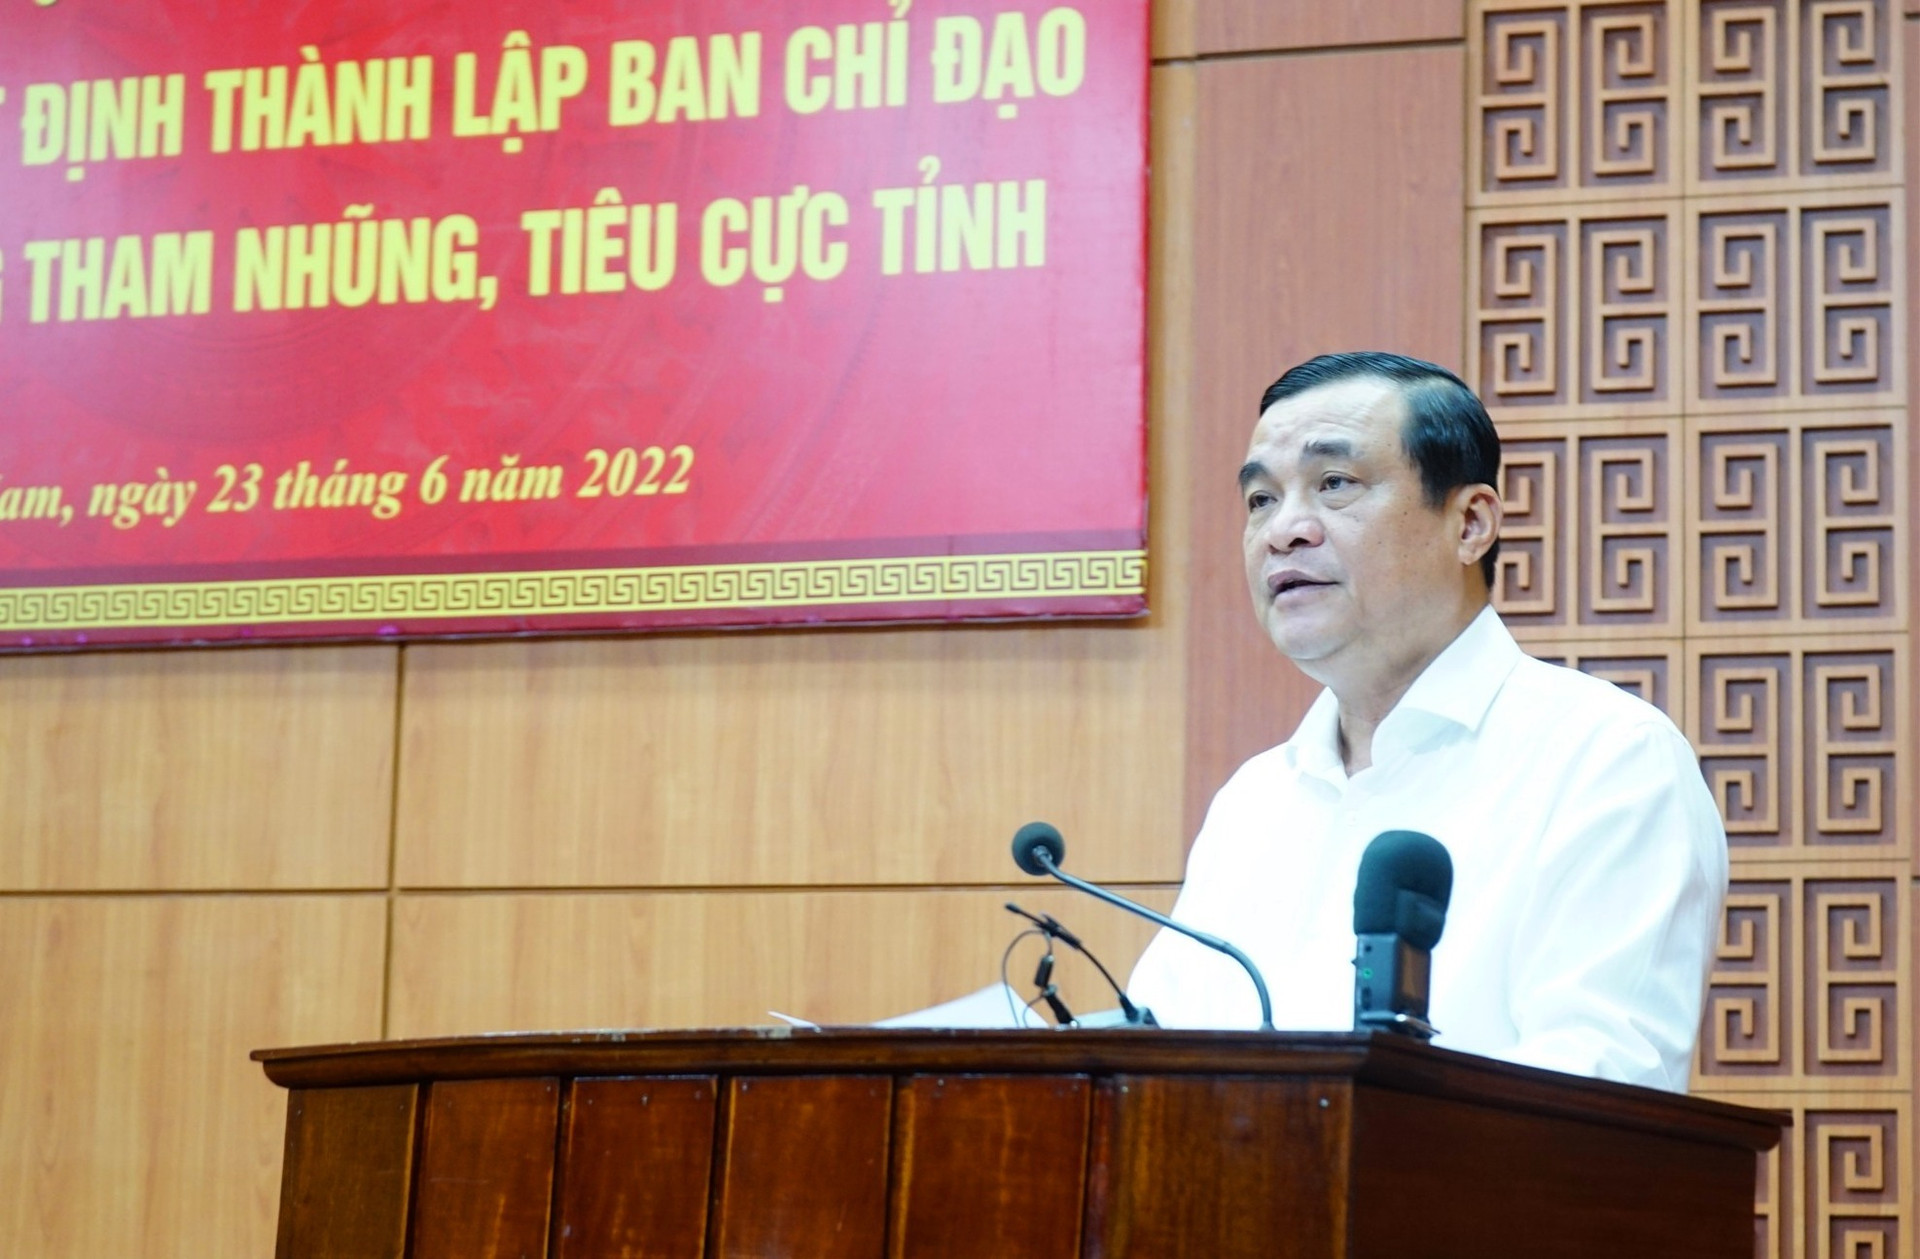 Đồng chí Phan Việt Cường - Trưởng ban Chỉ đạo phòng chống tham nhũng, tiêu cực tỉnh phát biểu nhận nhiệm vụ của Ban Chỉ đạo. Ảnh: N.Đ